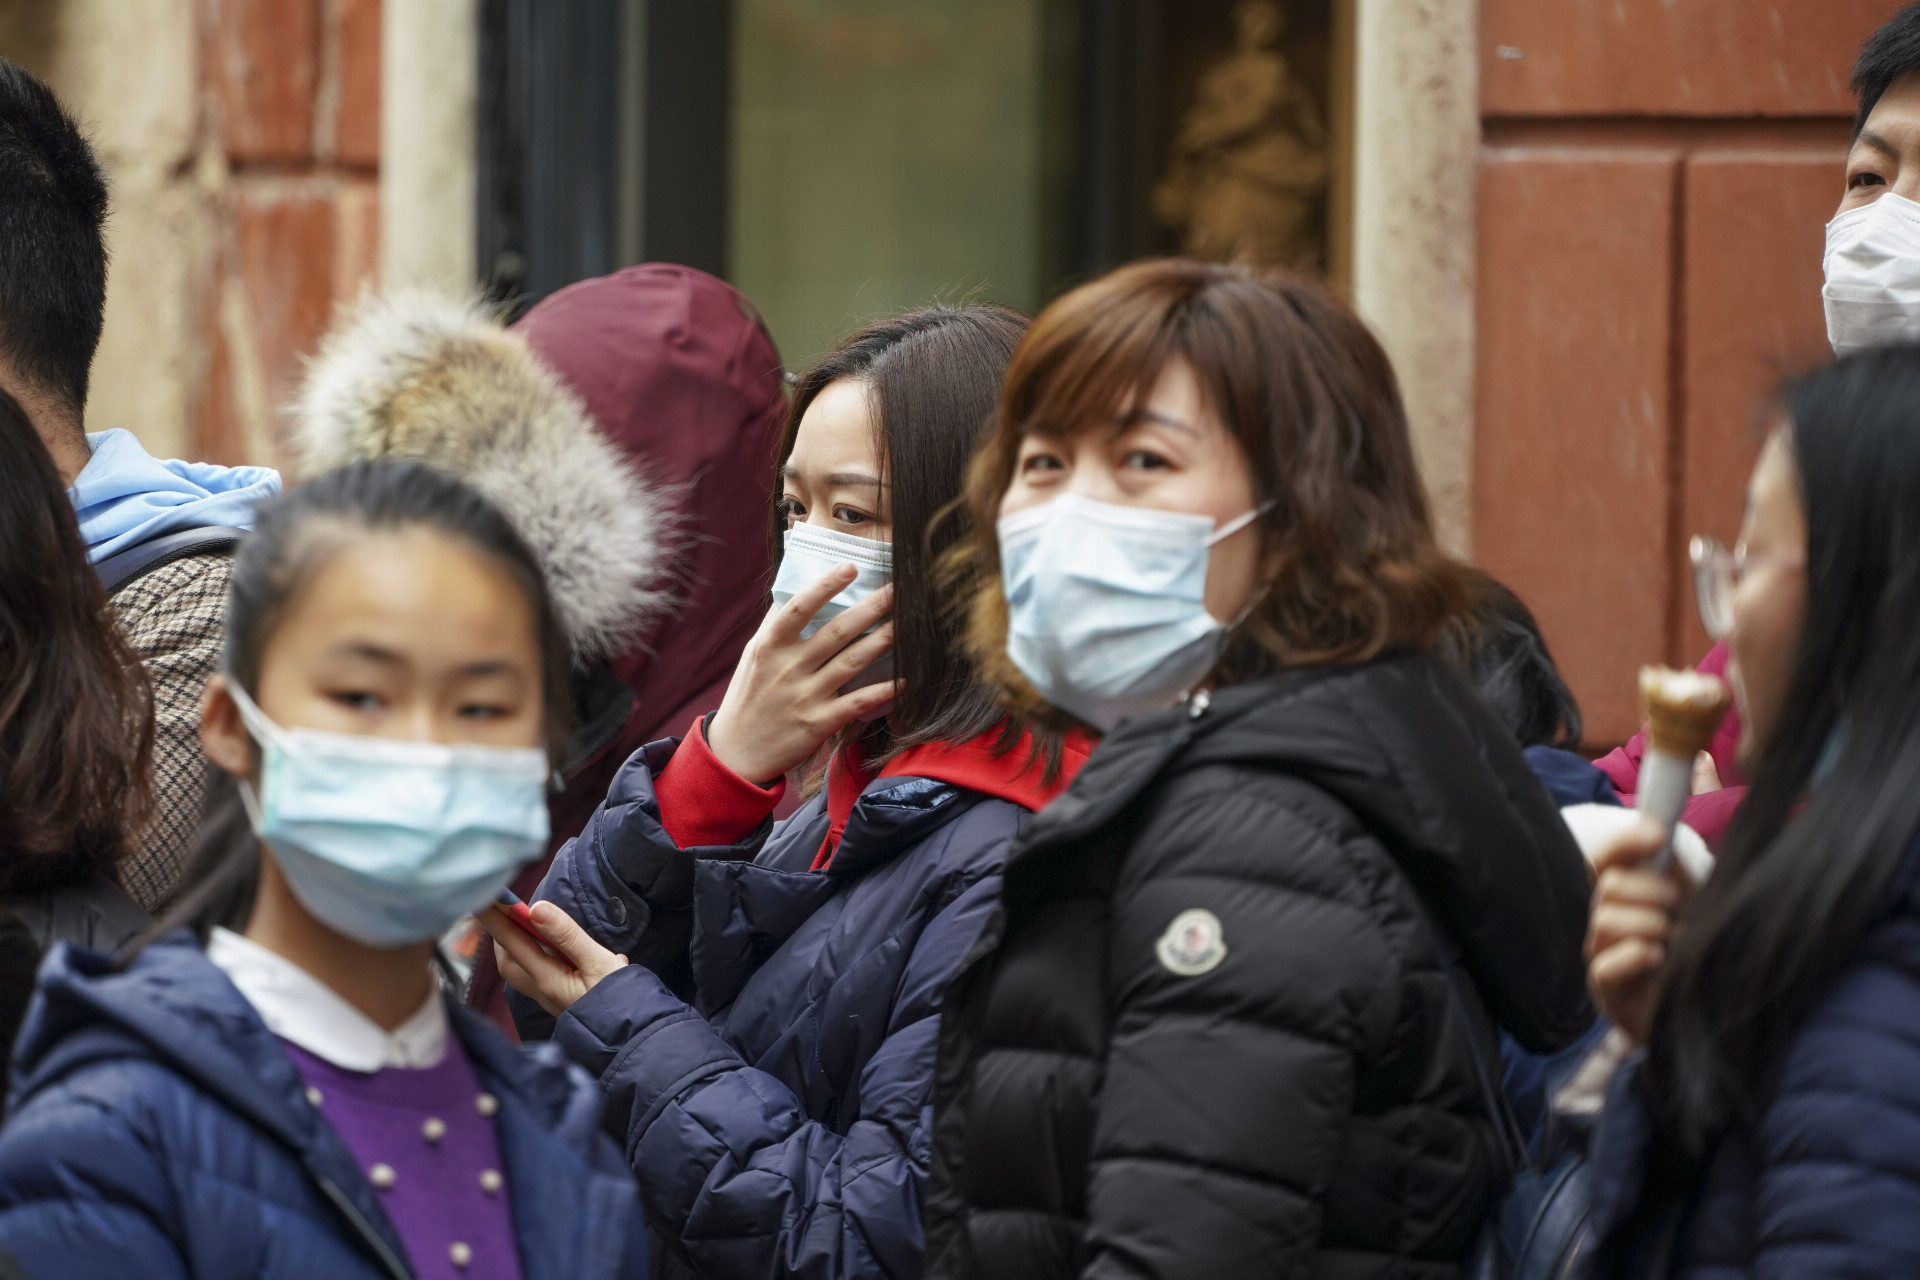 Čínski turisti s ochrannými rúškami na tvári kráčajú po ulici v Ríme